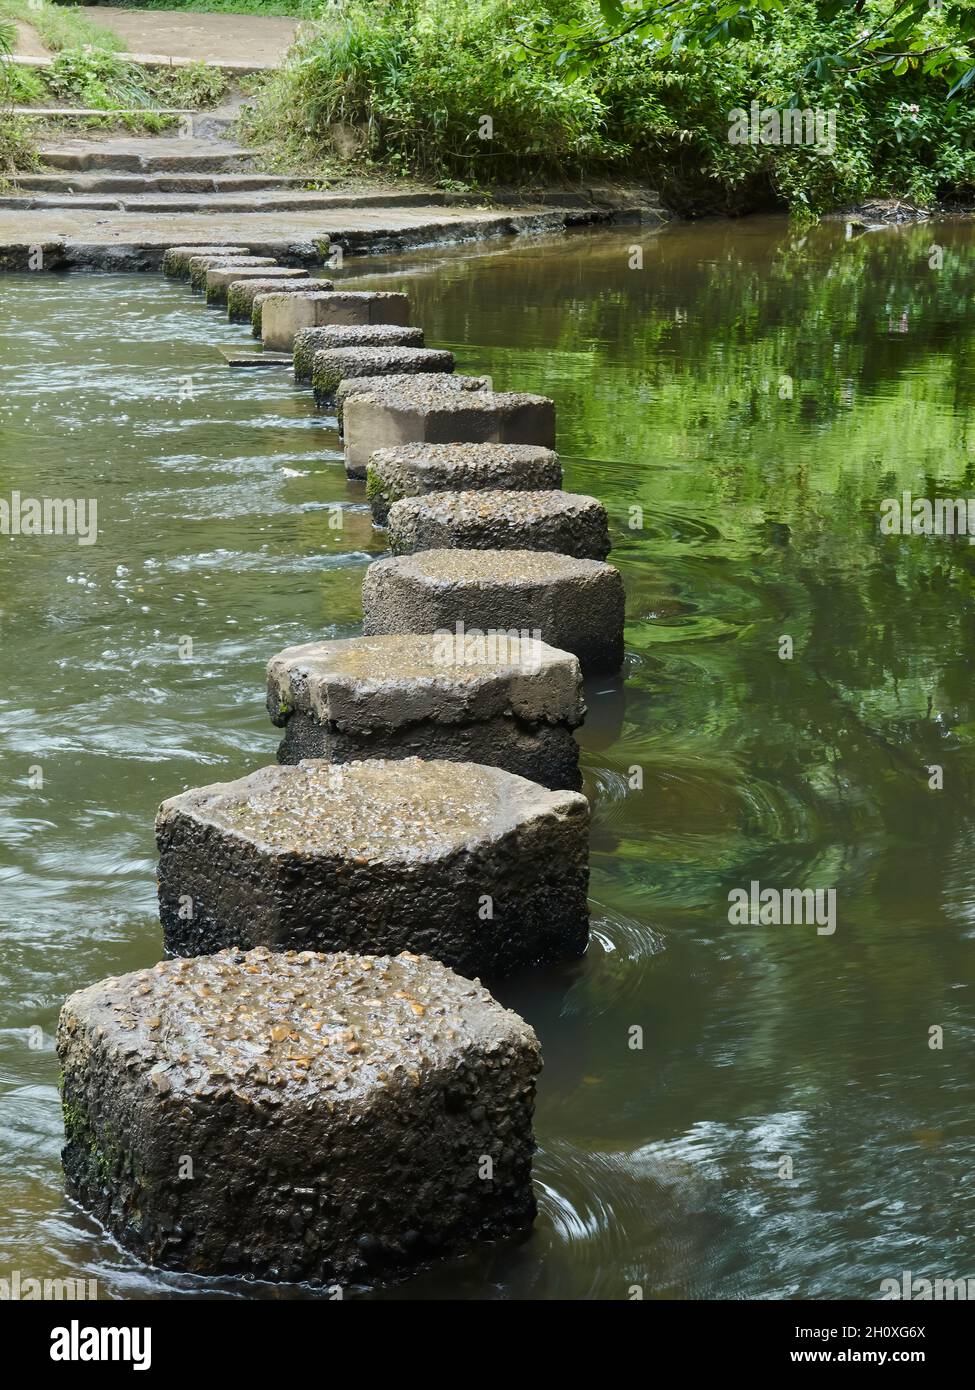 Da vicino, vista a livello basso di pietre che attraversano il fiume Mole ai piedi di Box Hill, che segna la strada attraverso le acque cristalline e alberate. Foto Stock